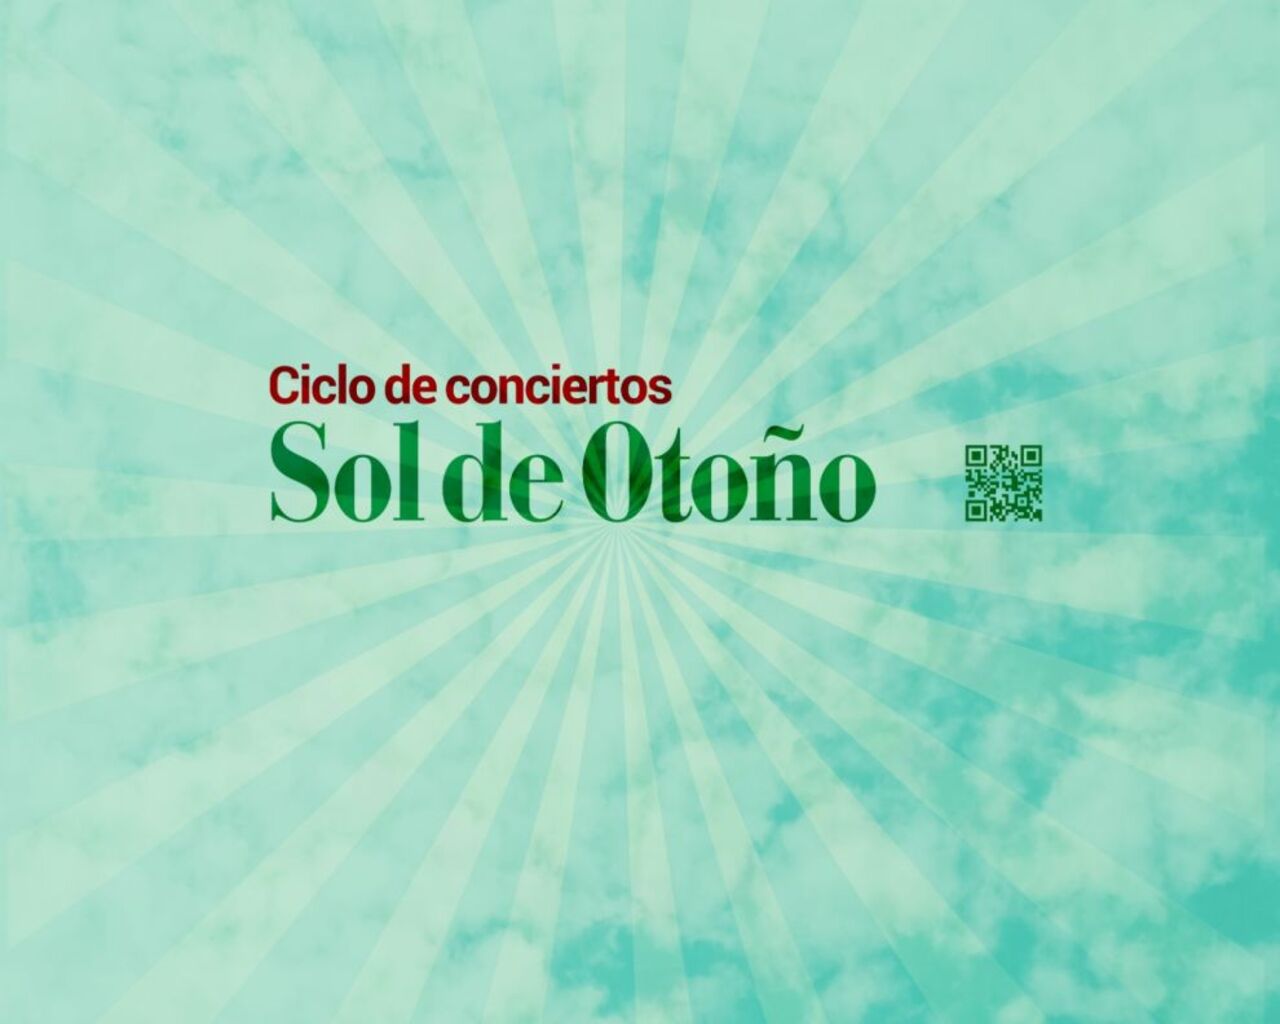 Sol Cultural lleva la música de autor al Rvbicón con siete conciertos del 22 de septiembre al 20 de octubre